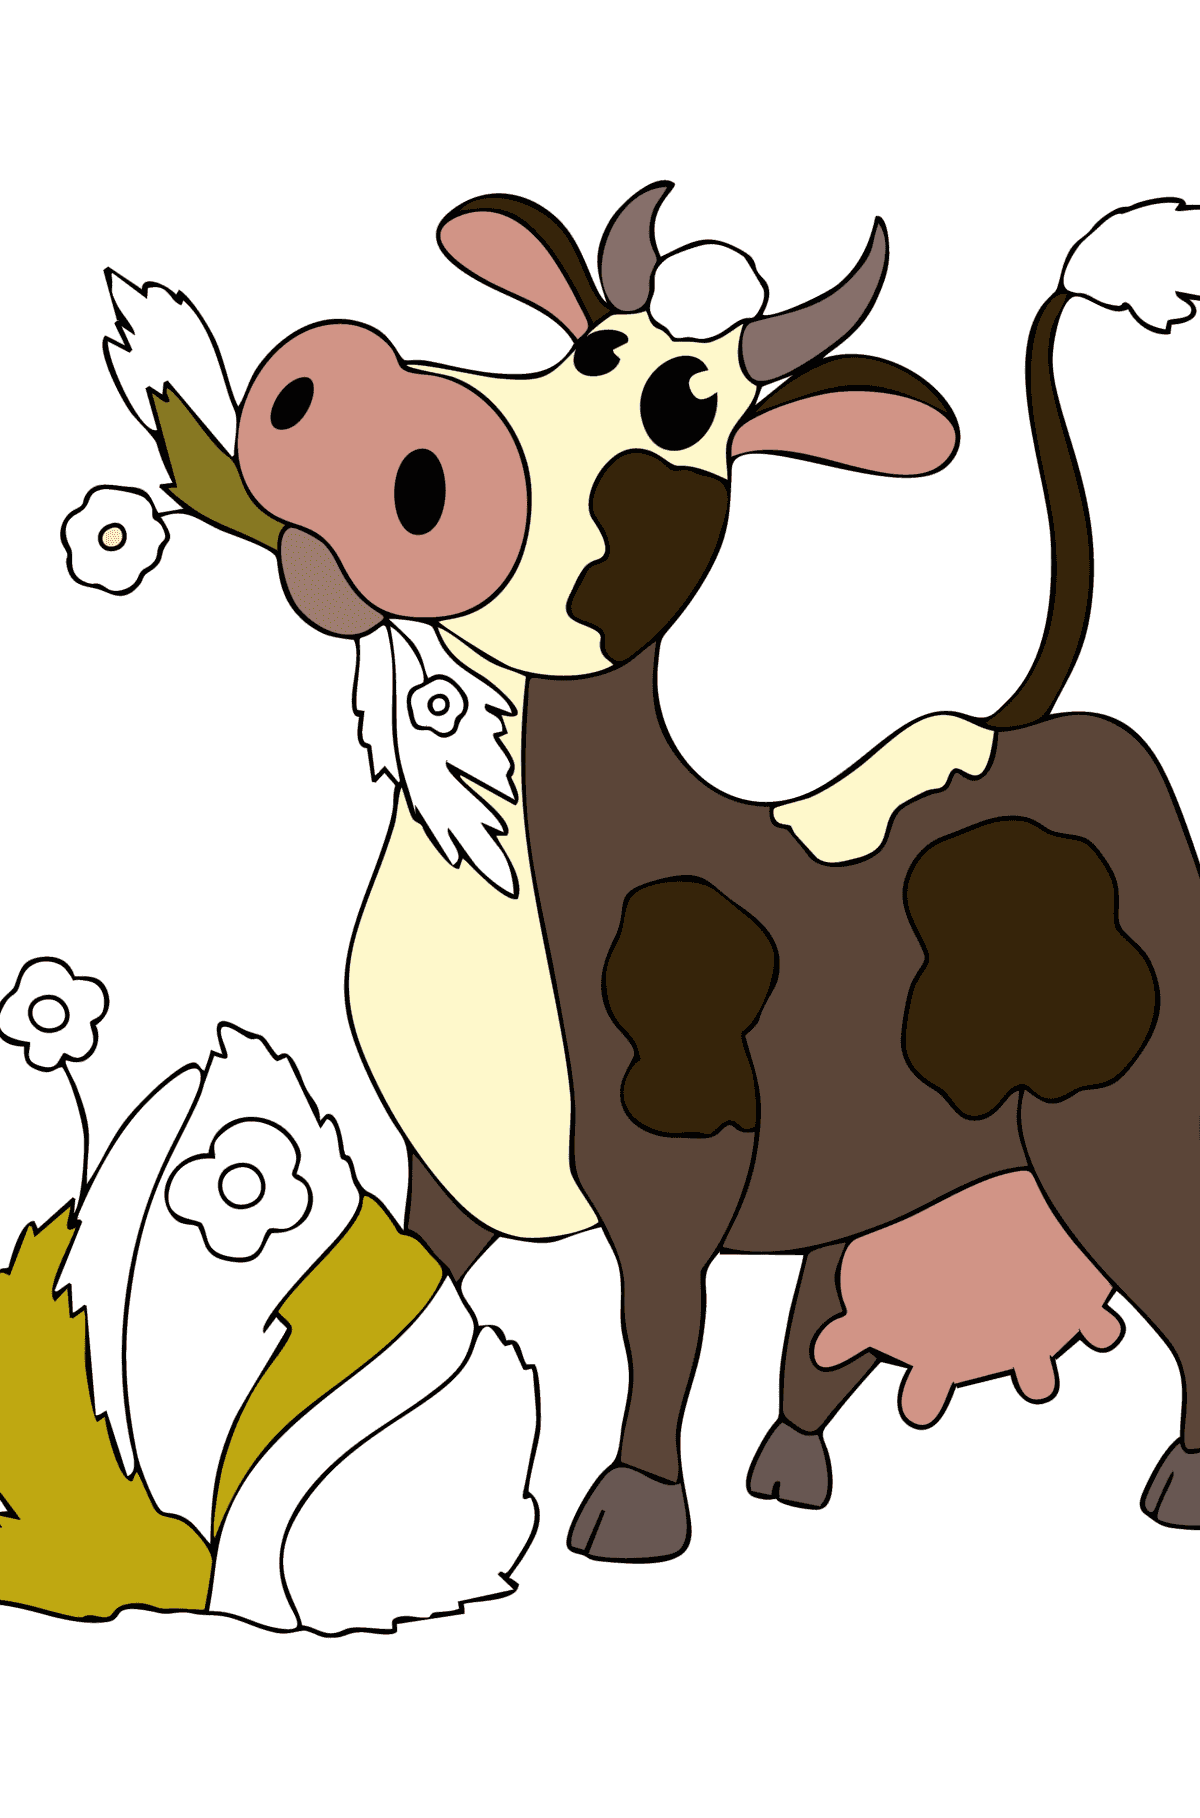 Boyama sayfası saman ile inek - Boyamalar çocuklar için